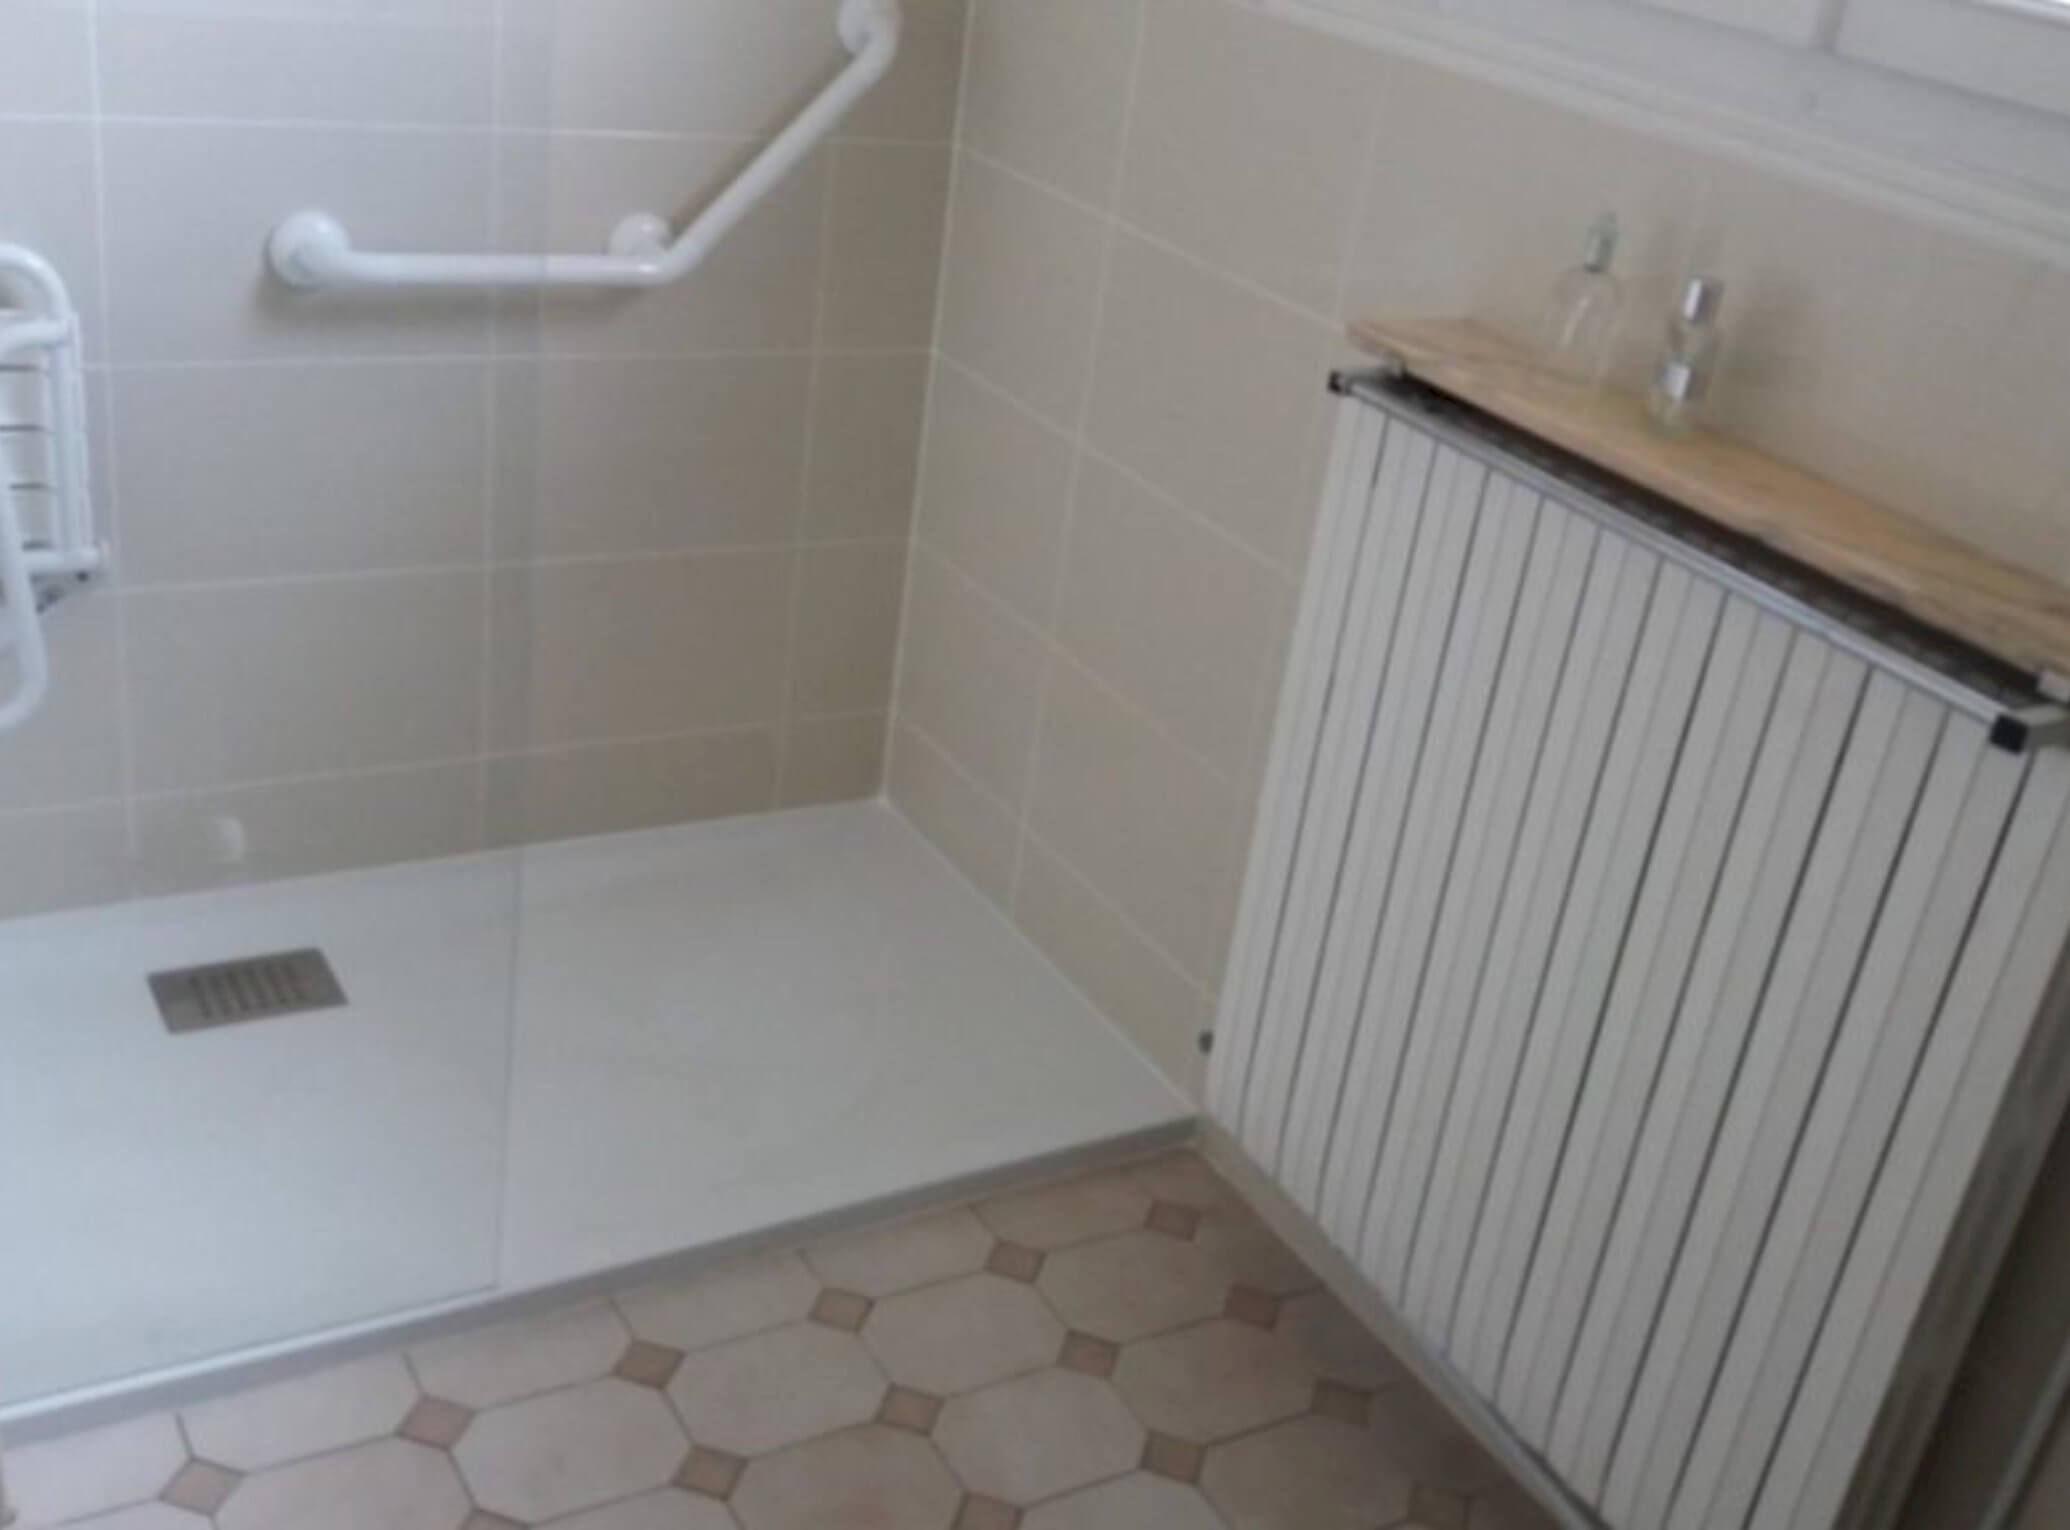 Rénovation de salle de bains à Boulogne-Billancourt (92) - Avenir Rénovations